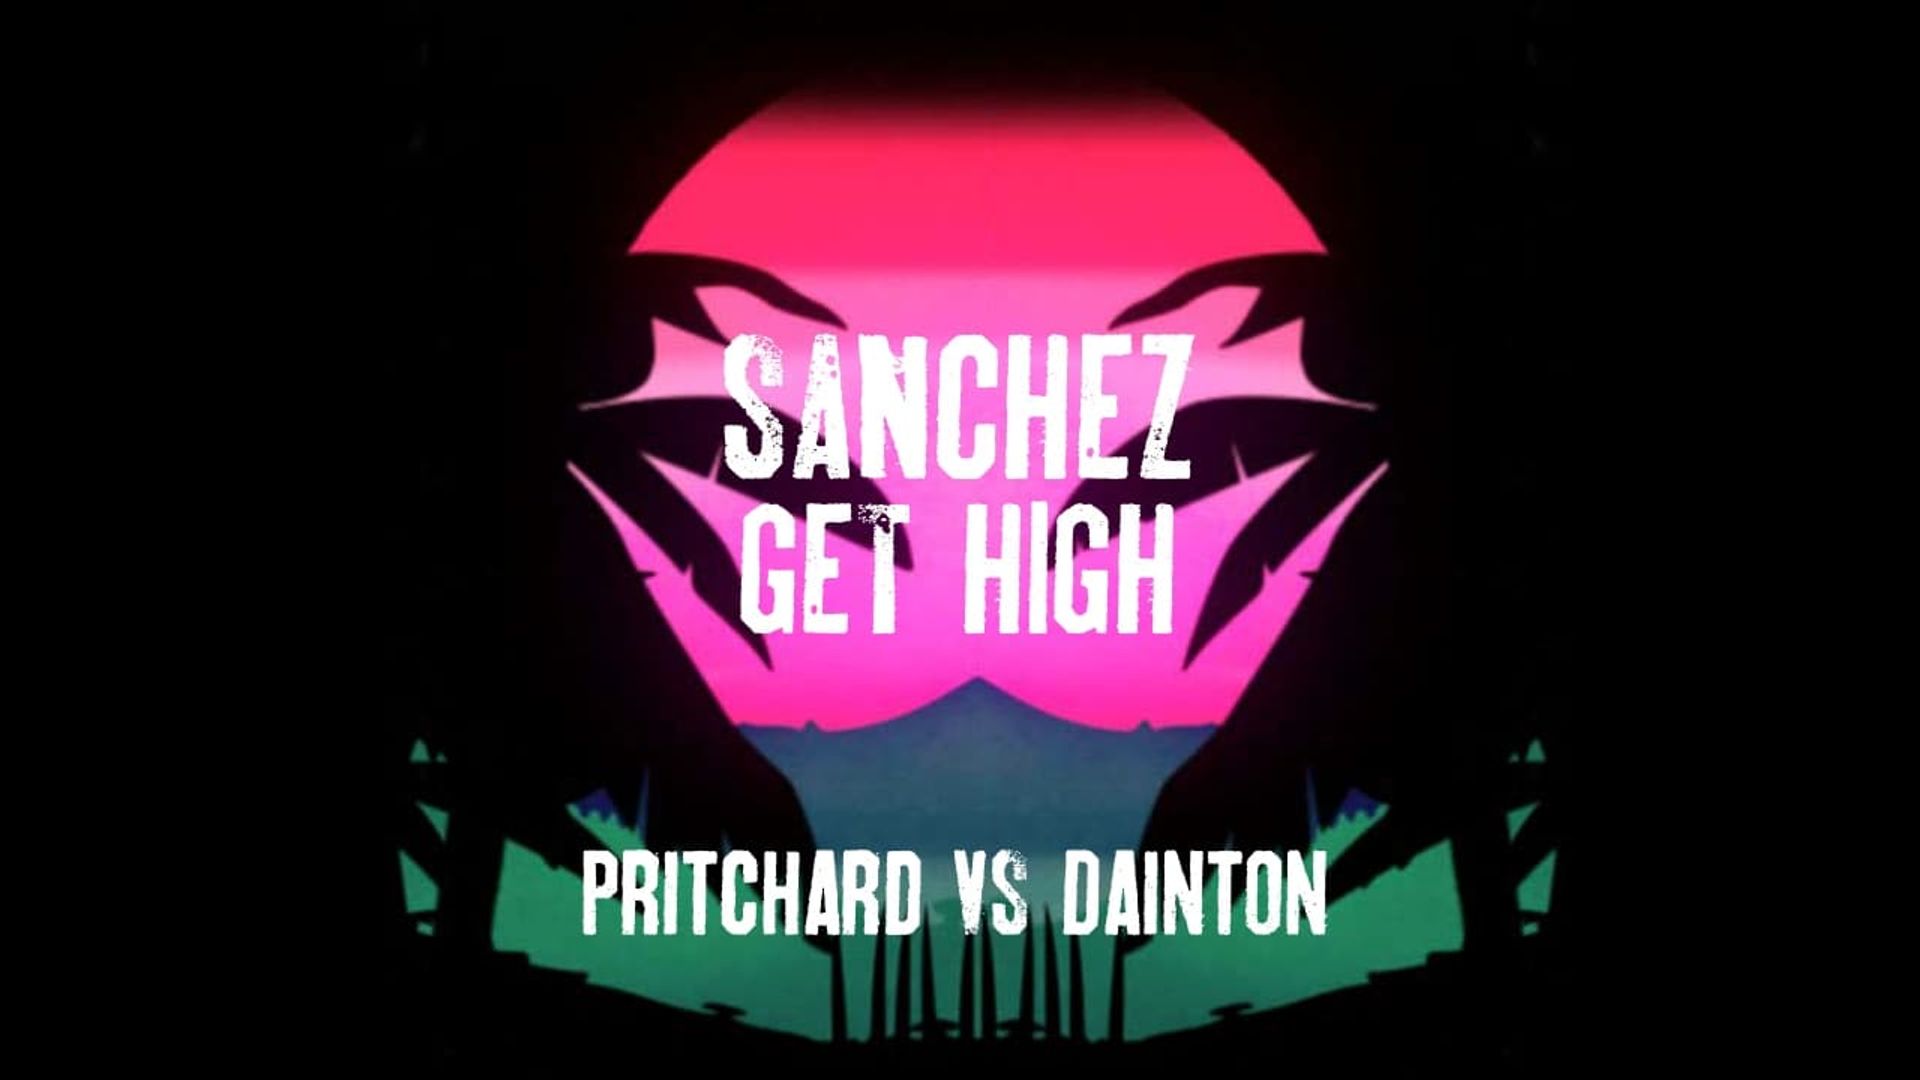 Sanchez Get High: Pritchard VS Dainton background